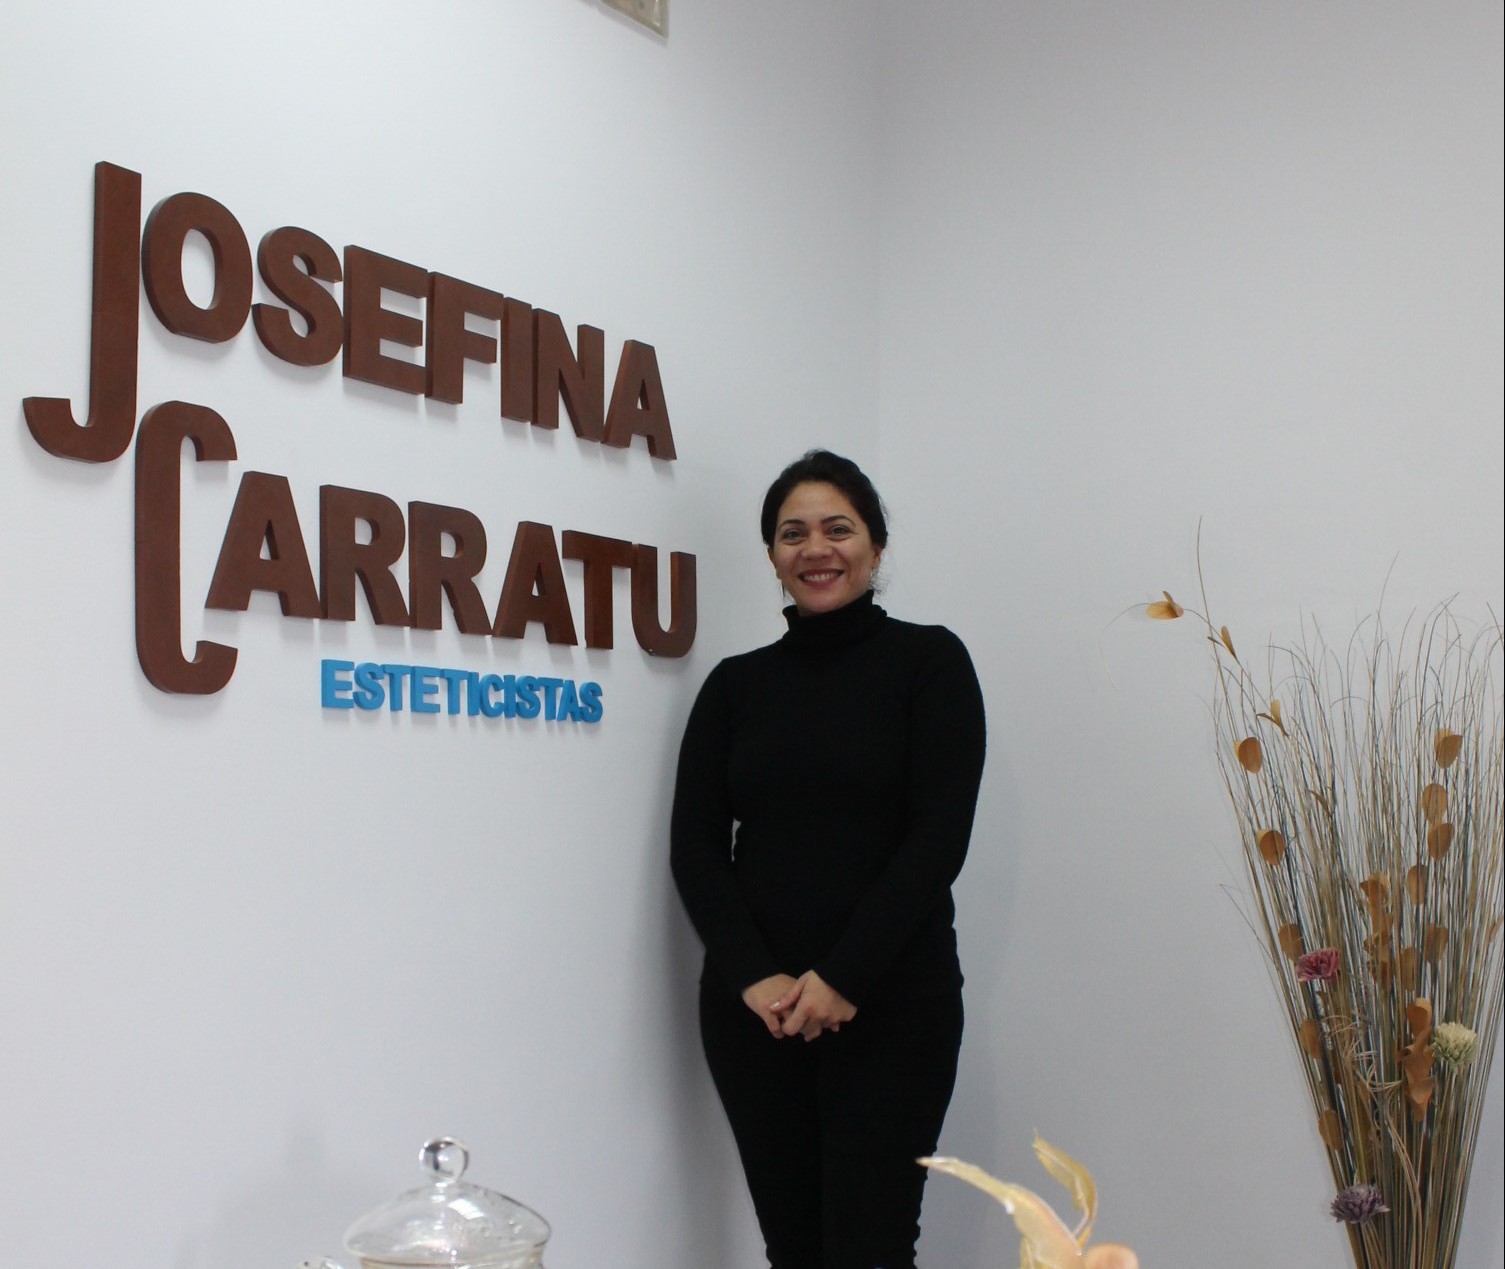 El Centro de Estética Josefina Carratú abre sus puertas en Manzanares